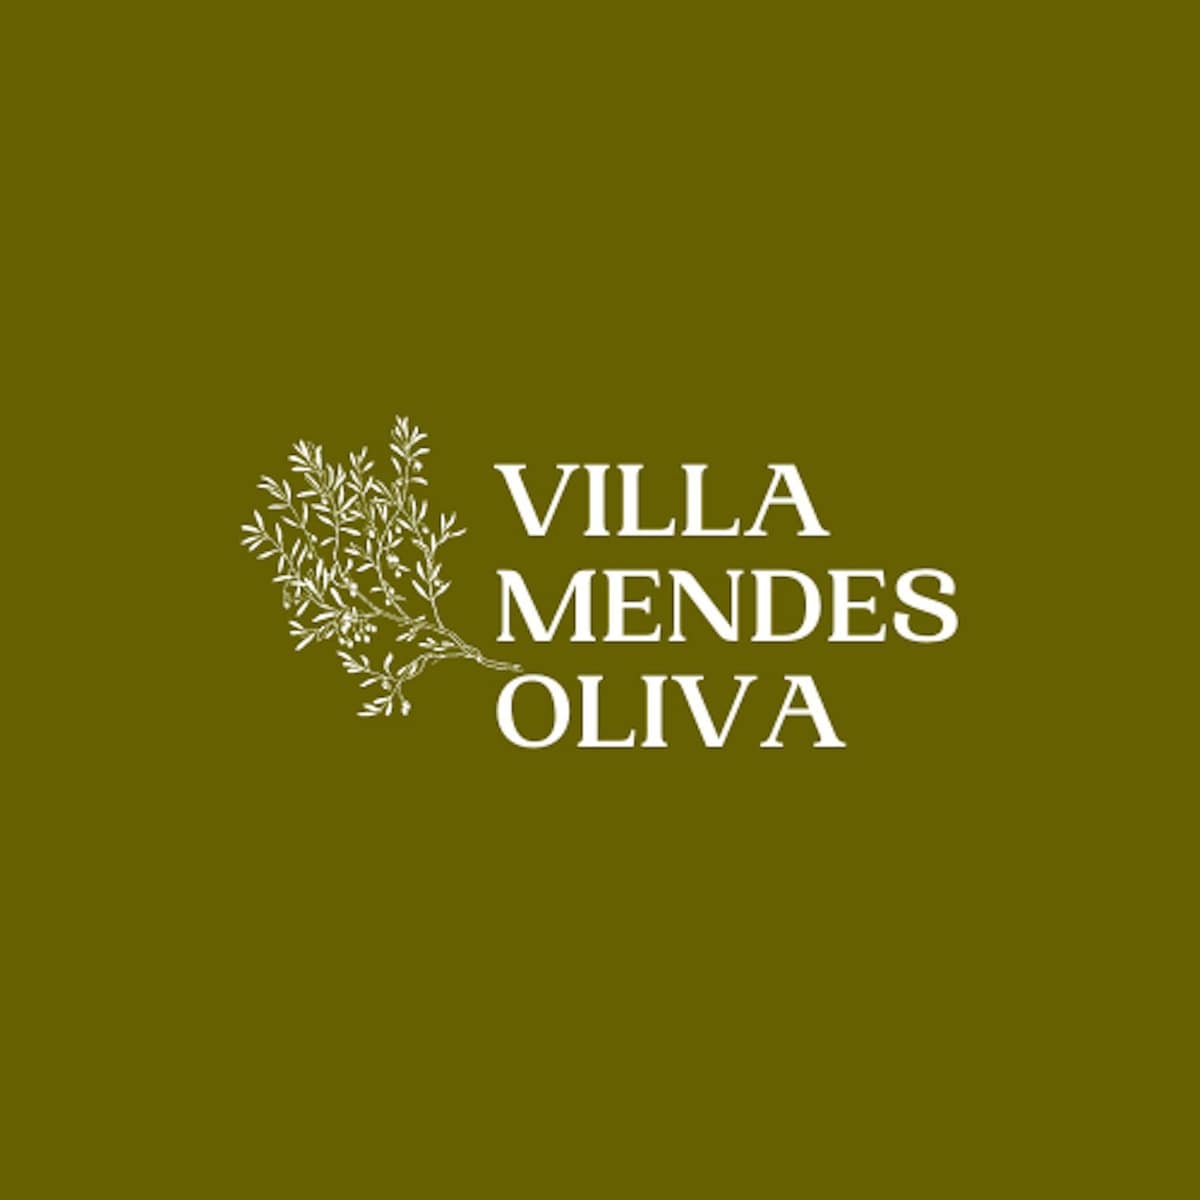 Villa Mendes Oliva